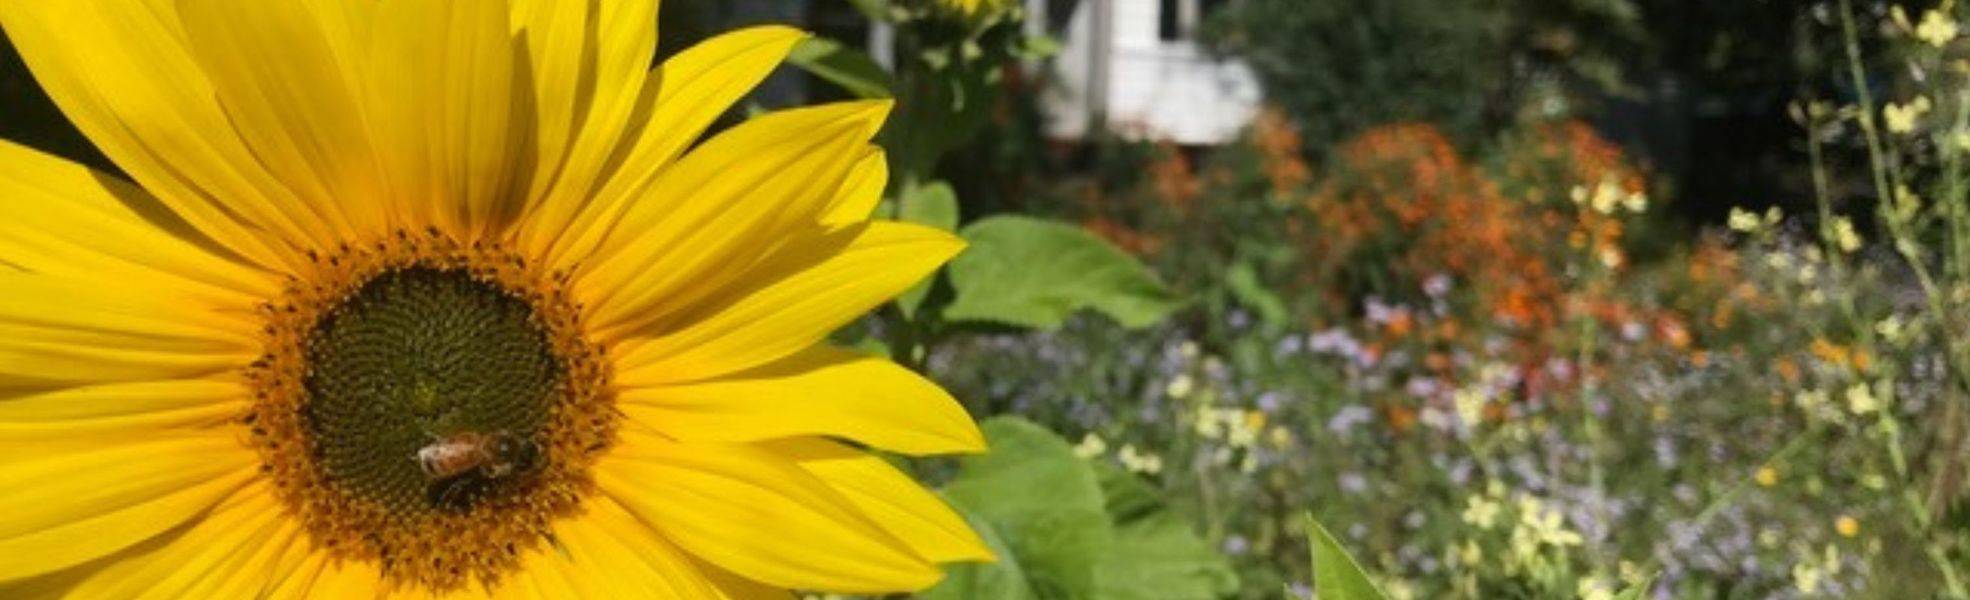 Sunflower in the Garden - Volunteering at Eco Village